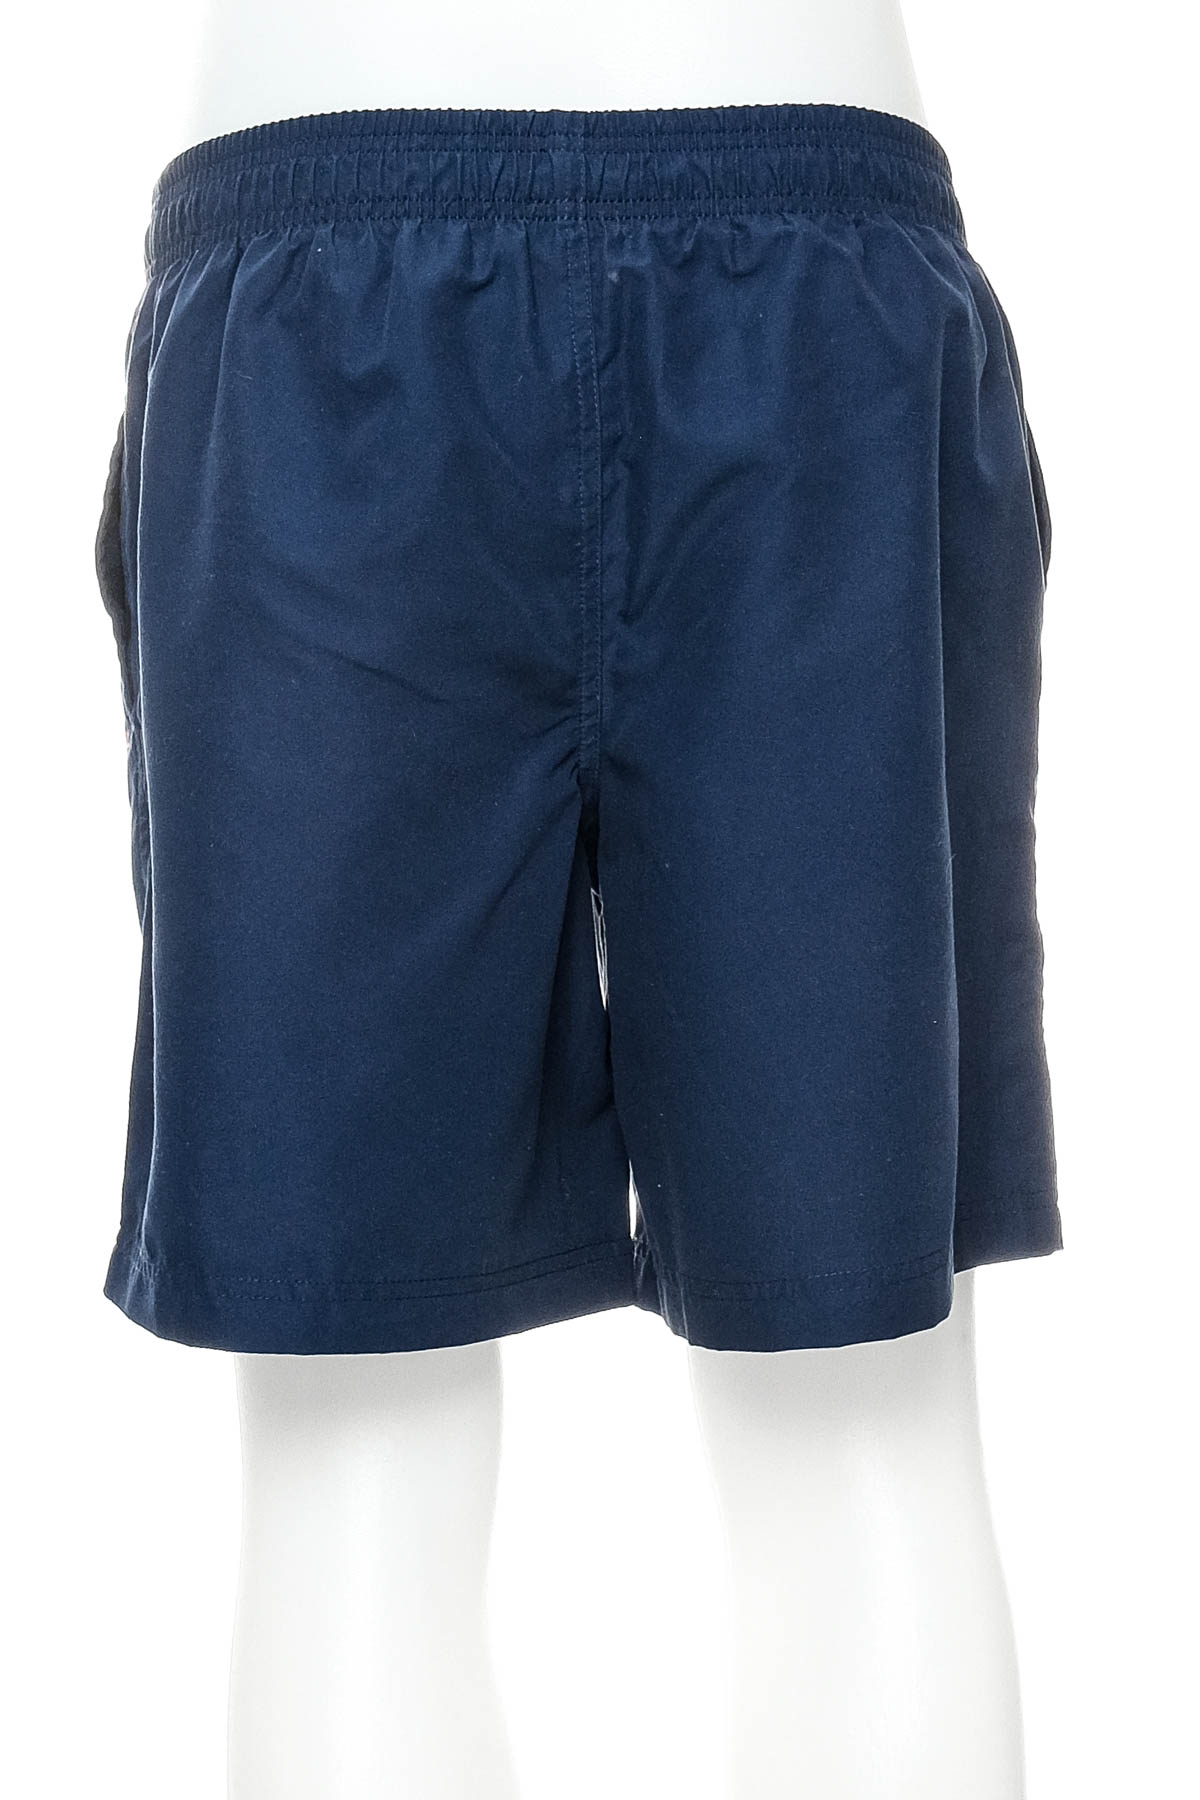 Men's shorts - S.Oliver - 1